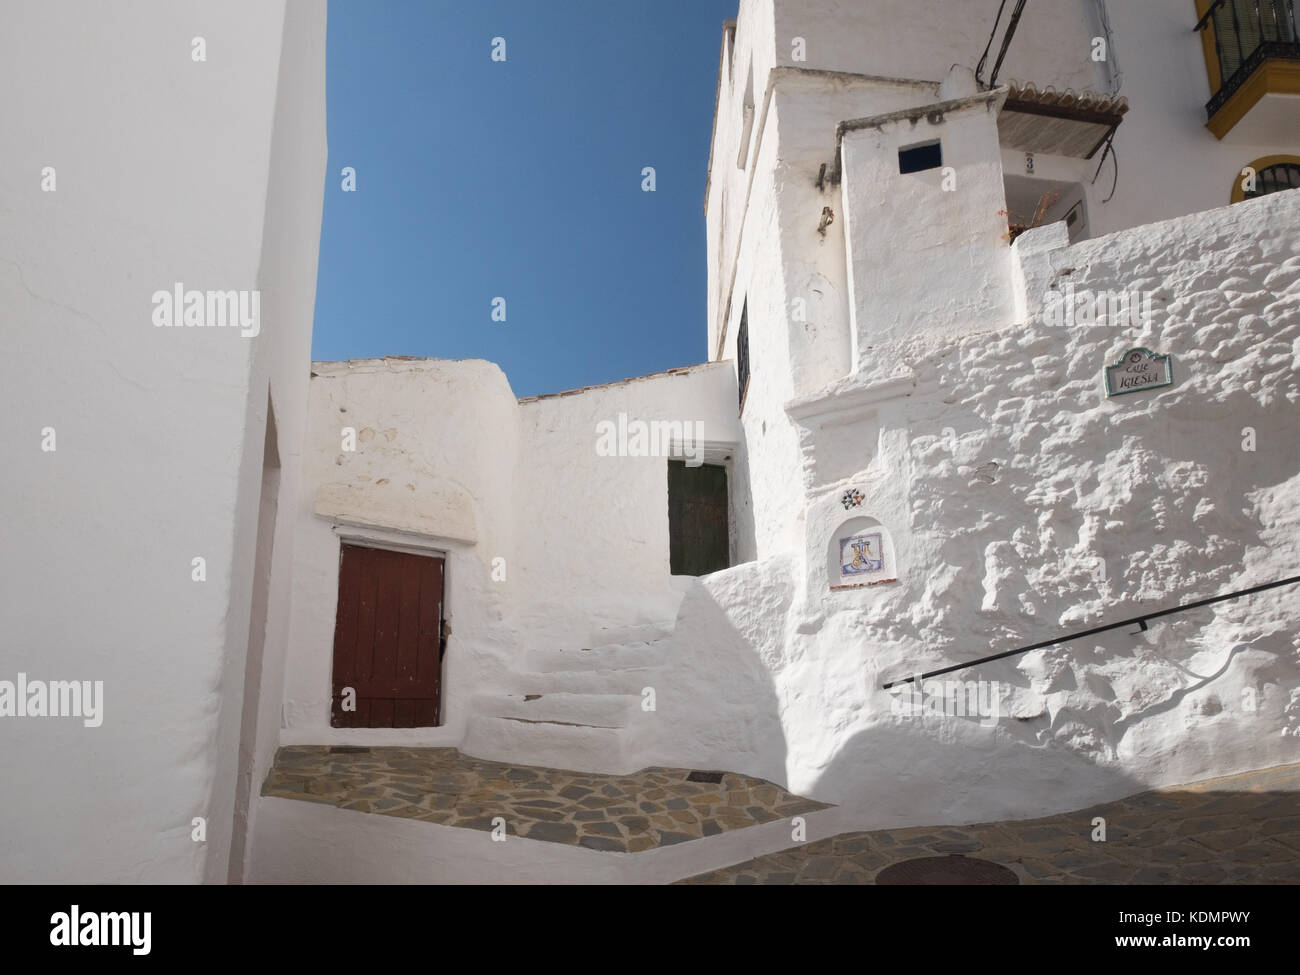 Salares in der Nähe von Nerja, Andalusien, Spanien. Weiße Häuser von den Mauren gebaut bilden die hübschen weißen Dörfer in der Nähe der Costa del Sol Stockfoto